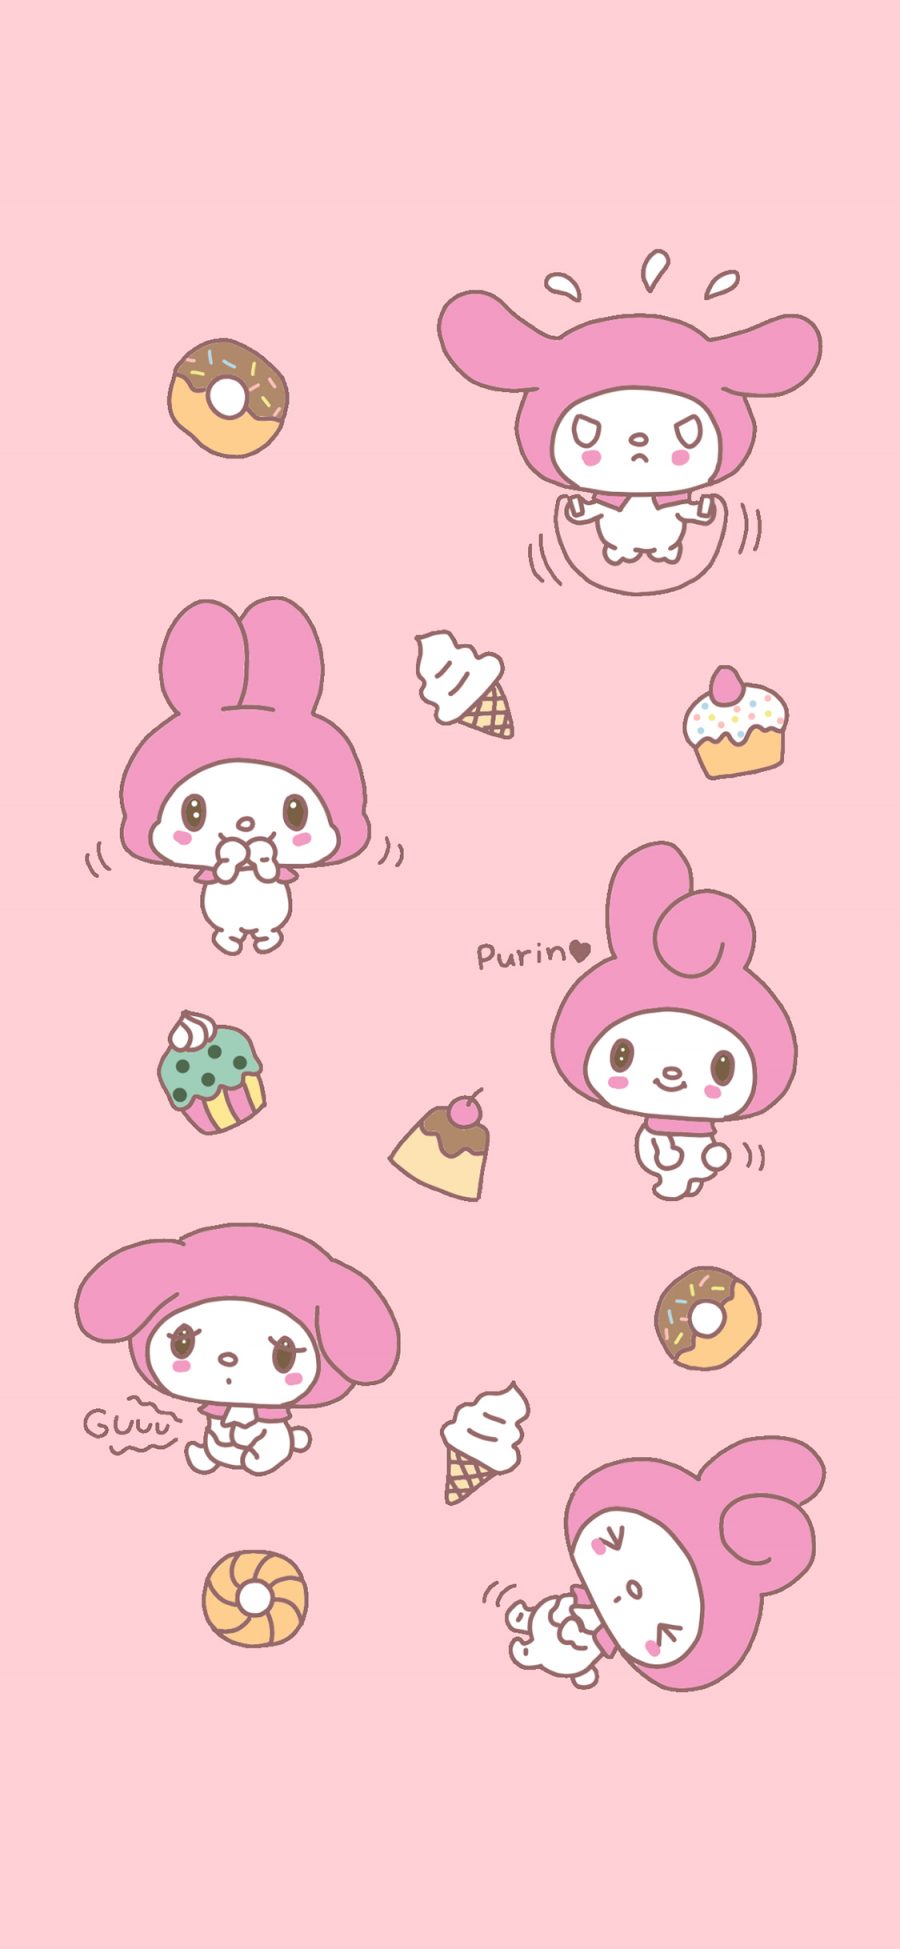 [2436×1125]美乐蒂 粉色 卡通 可爱 Melody 甜品 苹果手机动漫壁纸图片